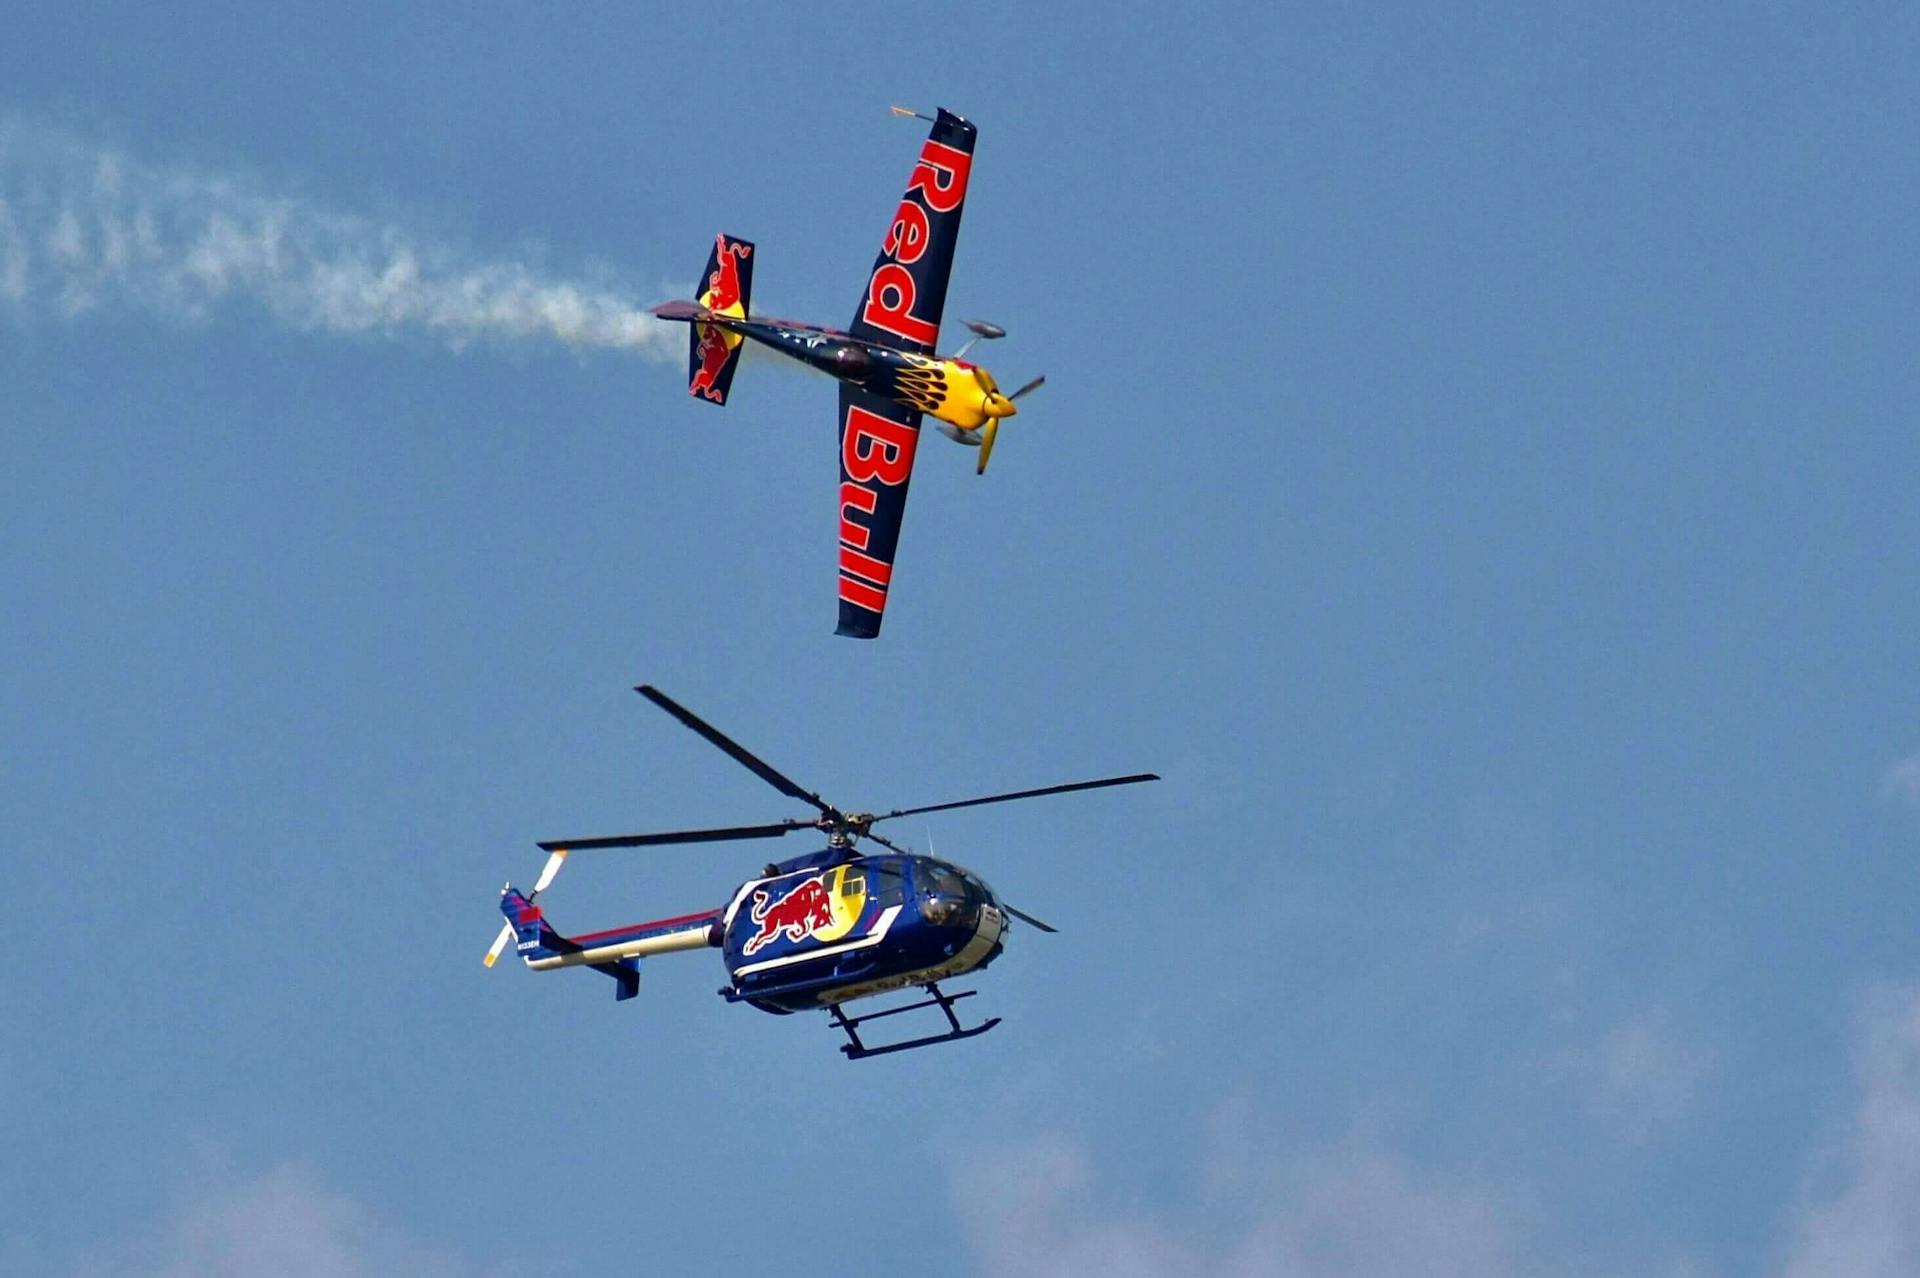 Een afbeelding van een helikopter en een vlietuig van RedBull. RedBull staat erom bekend om vaak extreme evenementen te sponsoren, zoals vliegsporten en skiën vanaf hele hoge bergen. Dit is een voorbeeld van gesponsorde branded content.